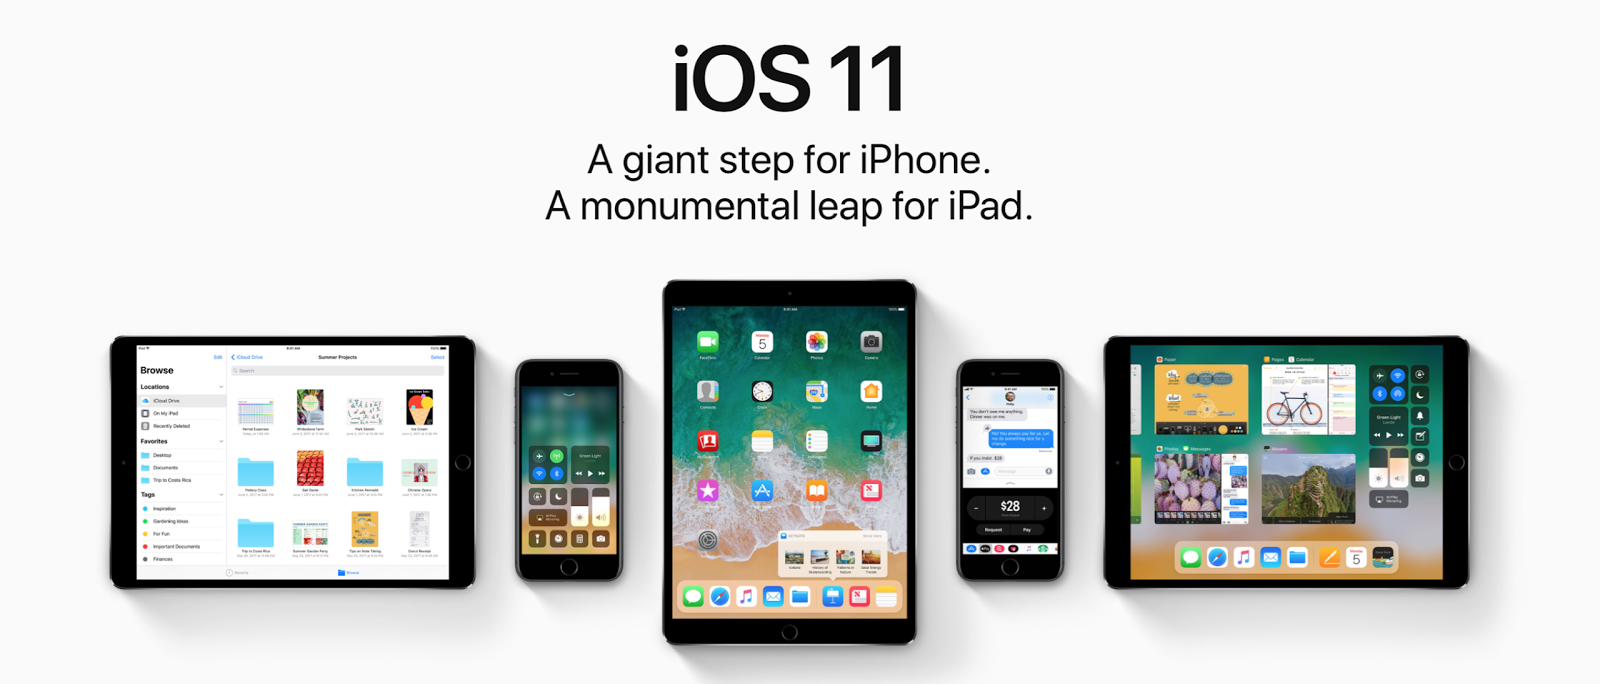 Imagem 1. Visão geral de novos recursos, recursos e chips do sistema operacional iOS 11 para iPhone e iPad. Comparação de sistemas operacionais iOS 11 e iOS 10